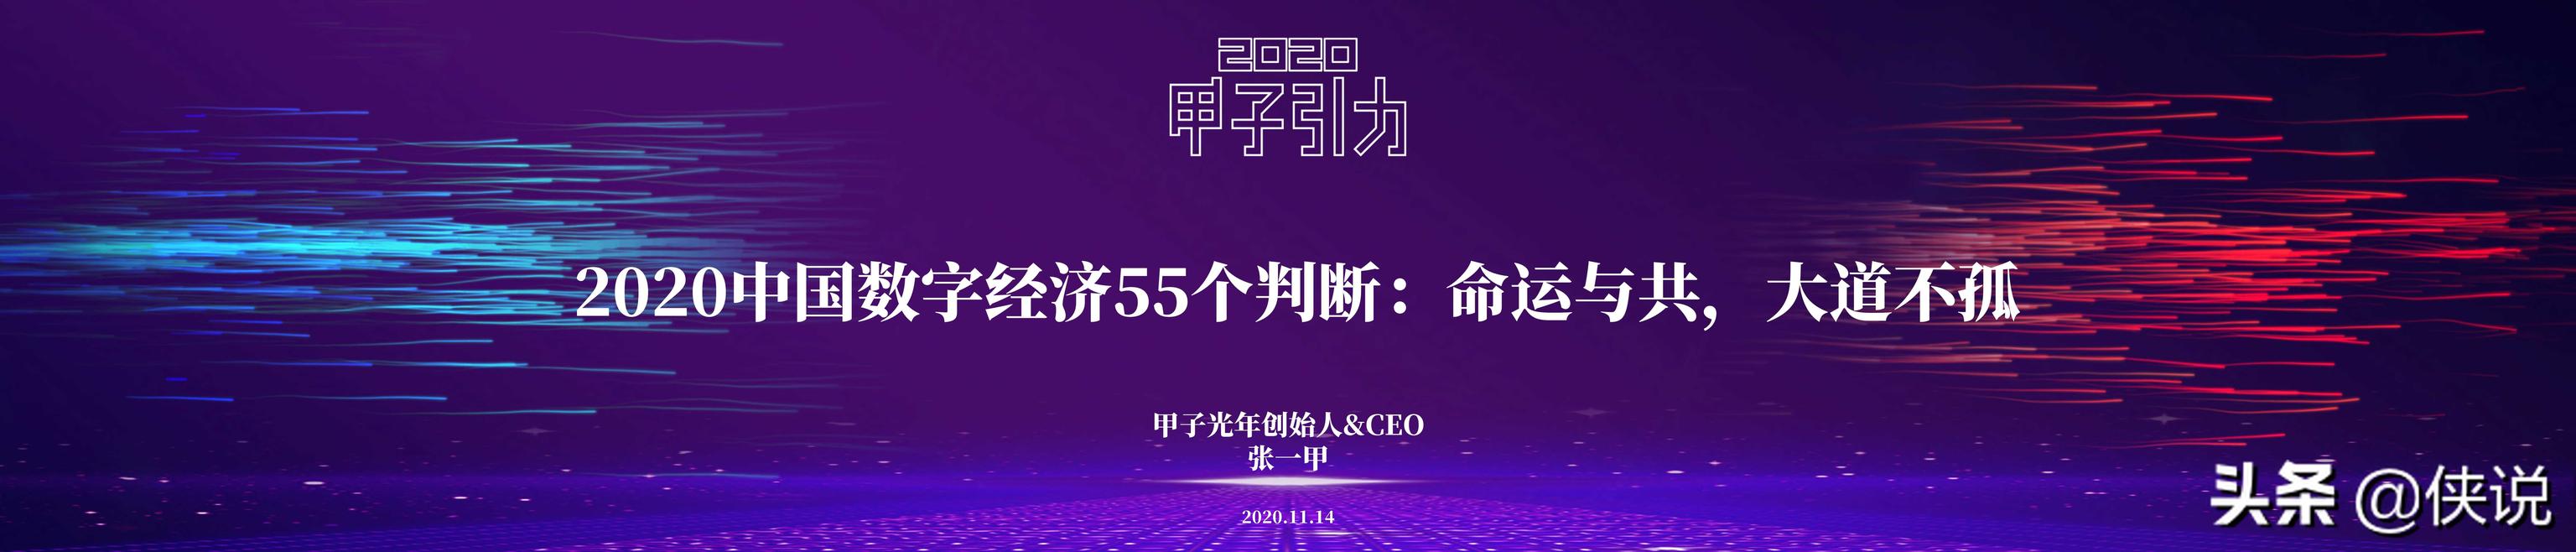 2020中国数字经济55个判断：命运与共，大道不孤